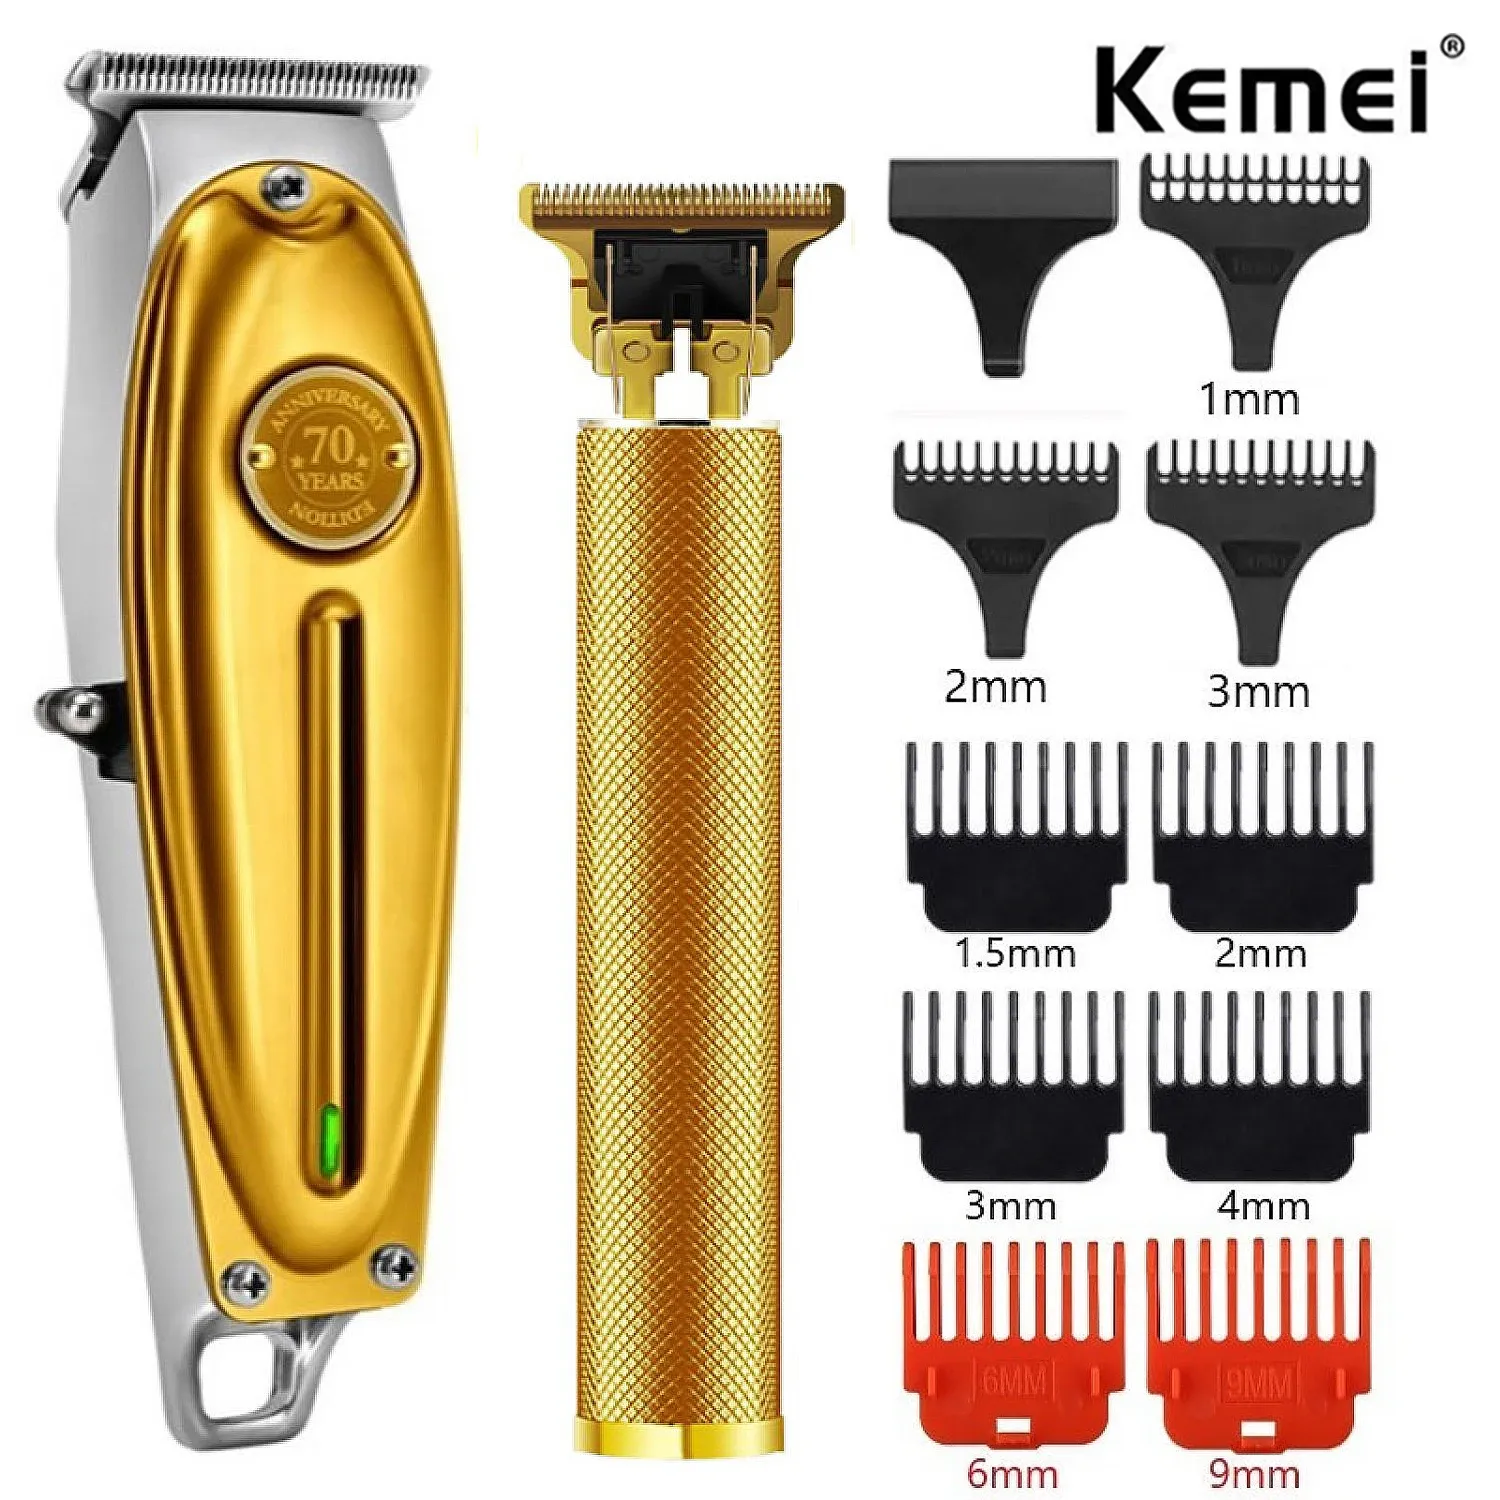 Aparadores kemeei km1949 barbeiro elétrico full metal profissional aparador de cabelo profissional para homens barba cabelos com acabamento para acabamento